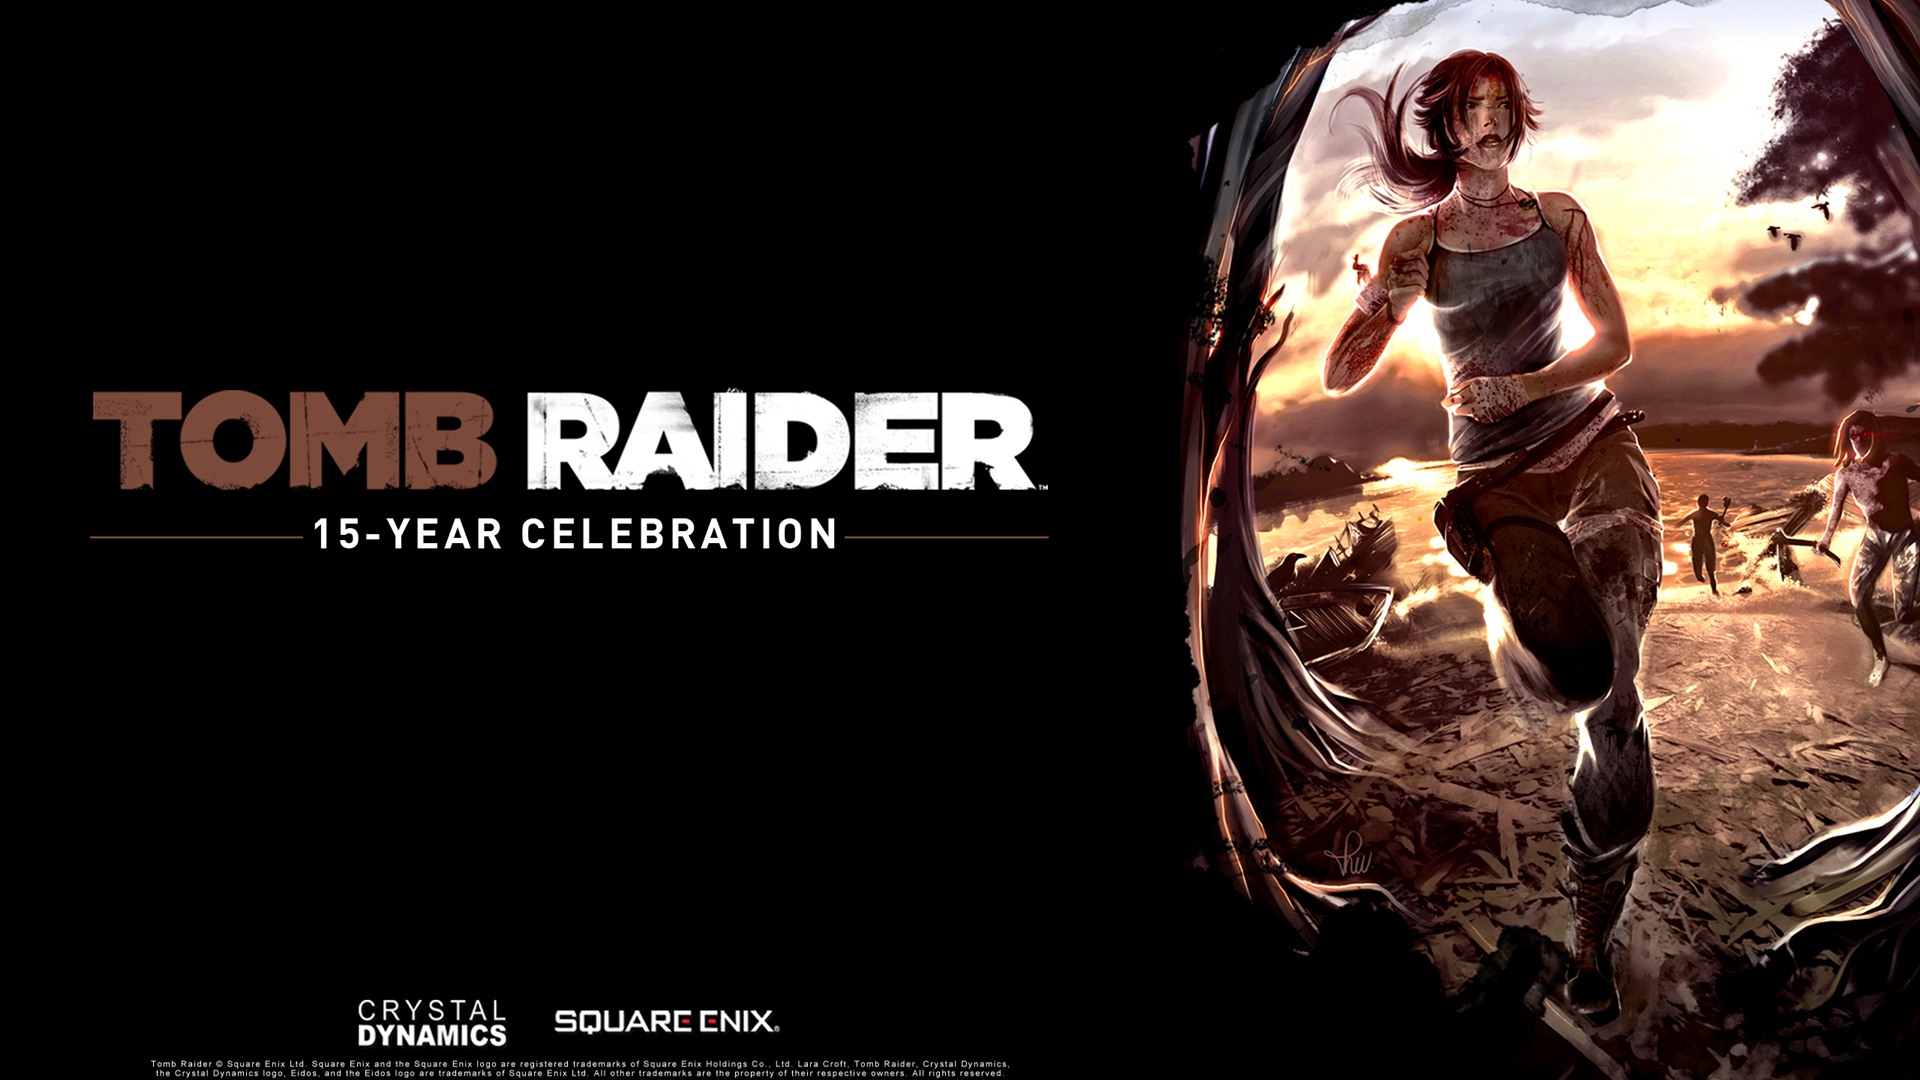 Tomb Raider 15-Year Celebration 古墓丽影15周年纪念版 高清壁纸8 - 1920x1080